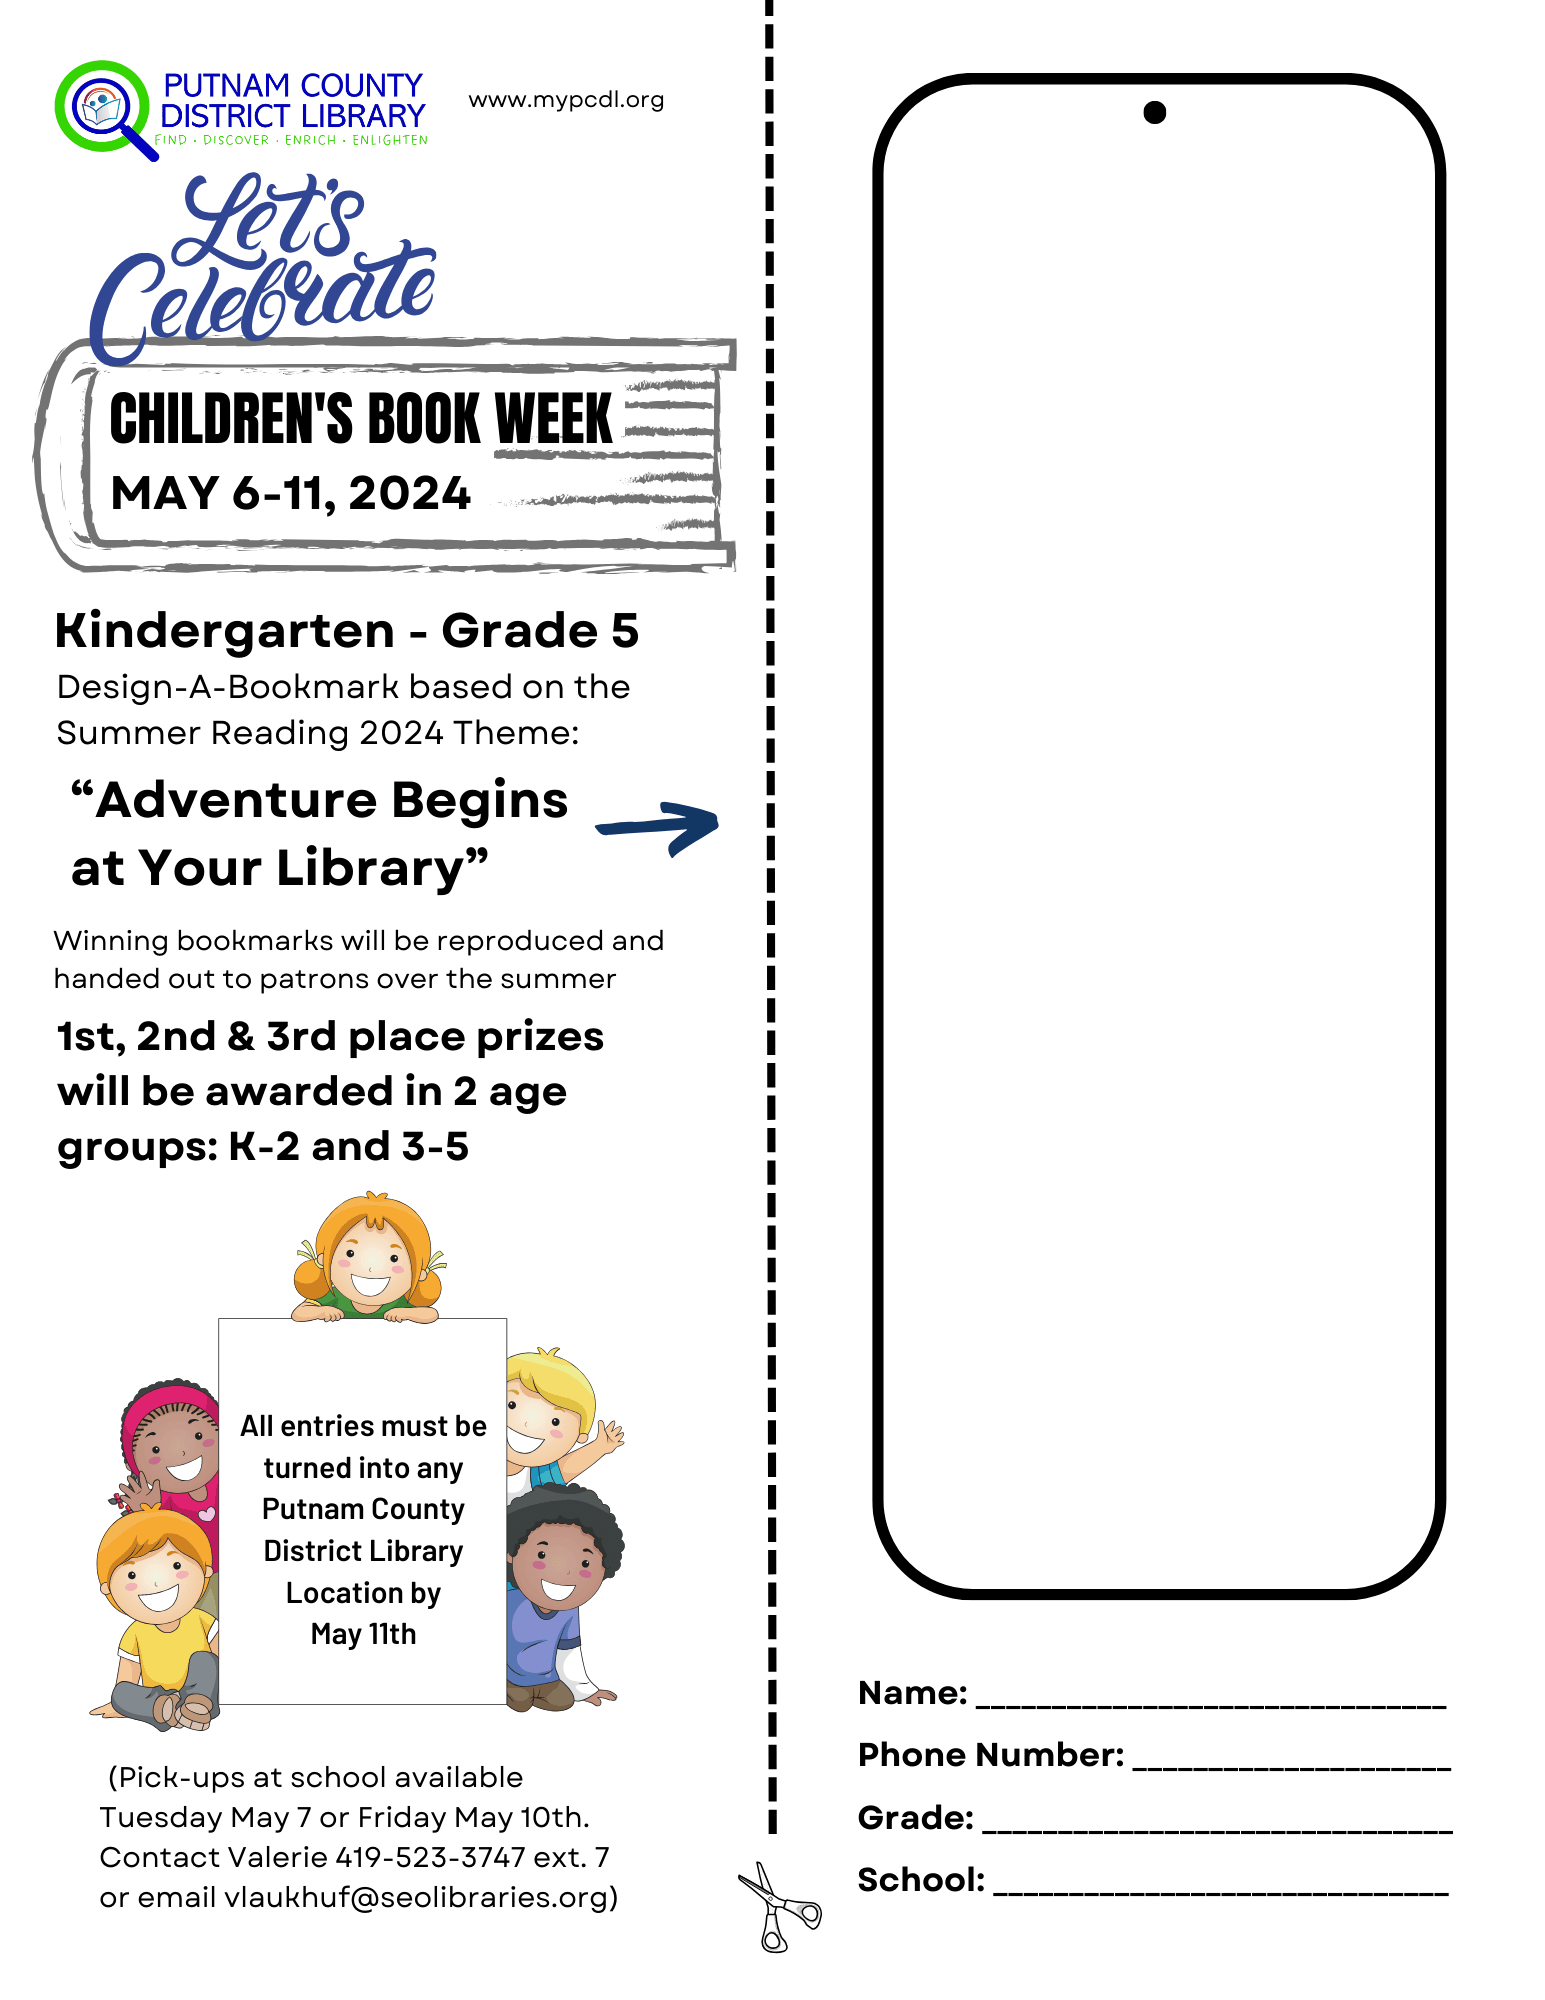 Children's Book Week bookmark entry form